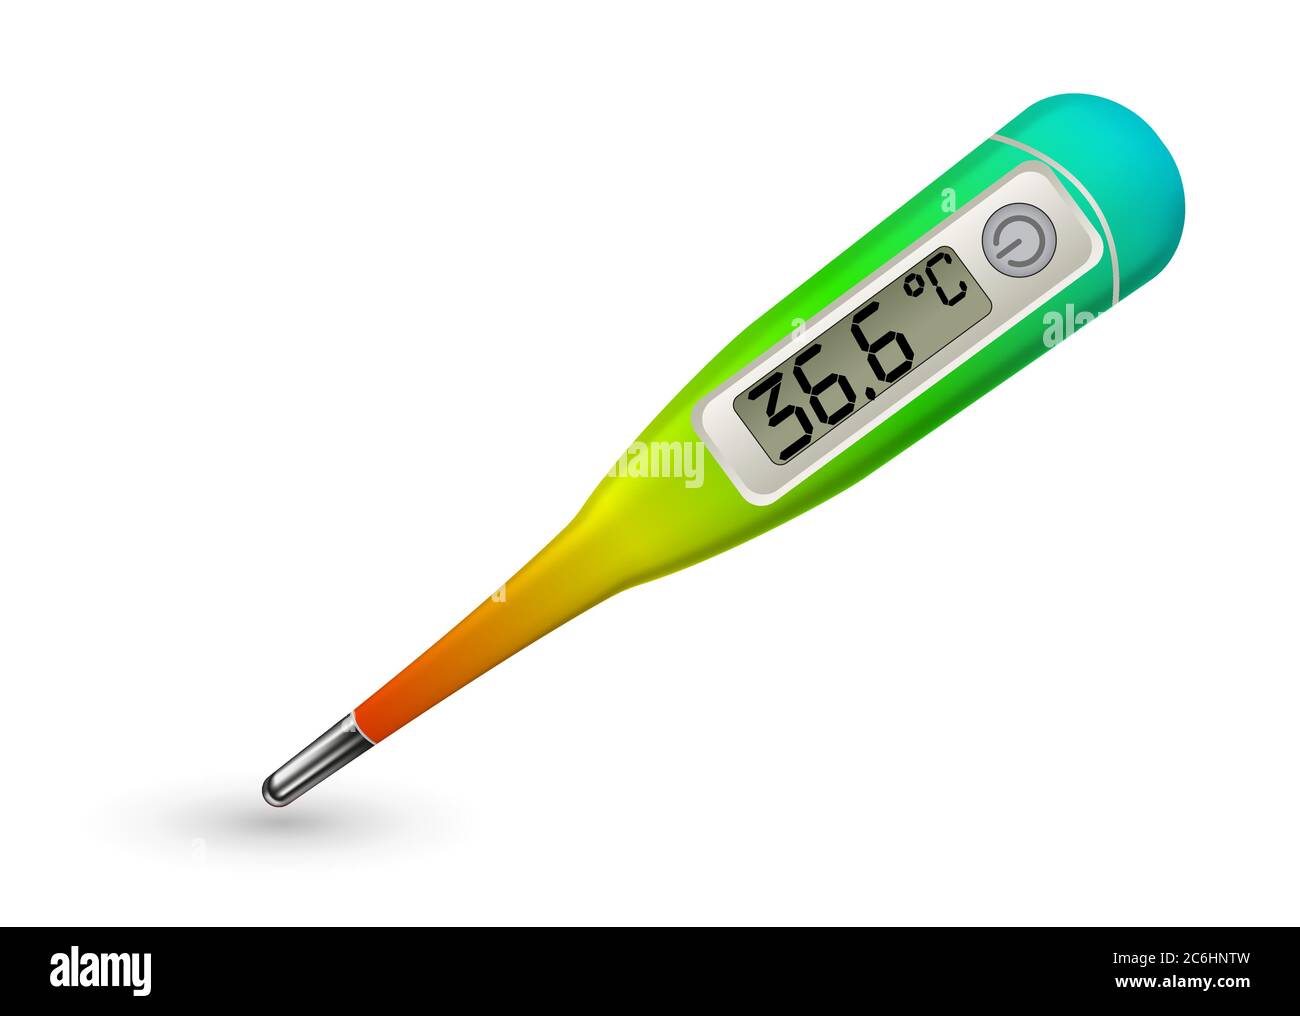 Thermomètre numérique médical, mesure de la température, santé,  récupération, 36.6 Image Vectorielle Stock - Alamy